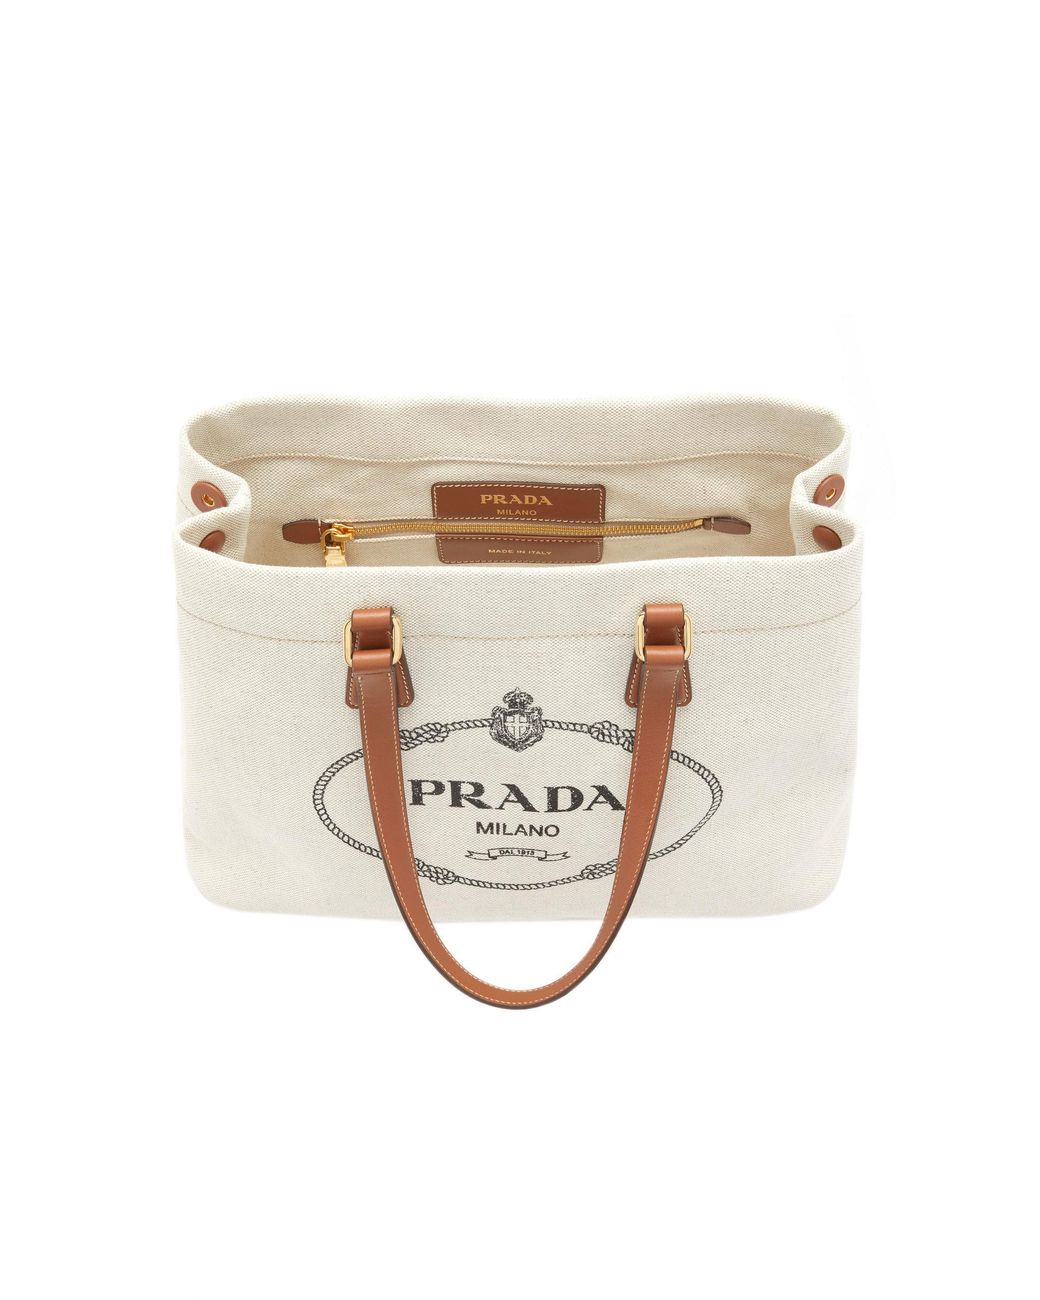 White Prada Canvas Handbag – Designer Revival